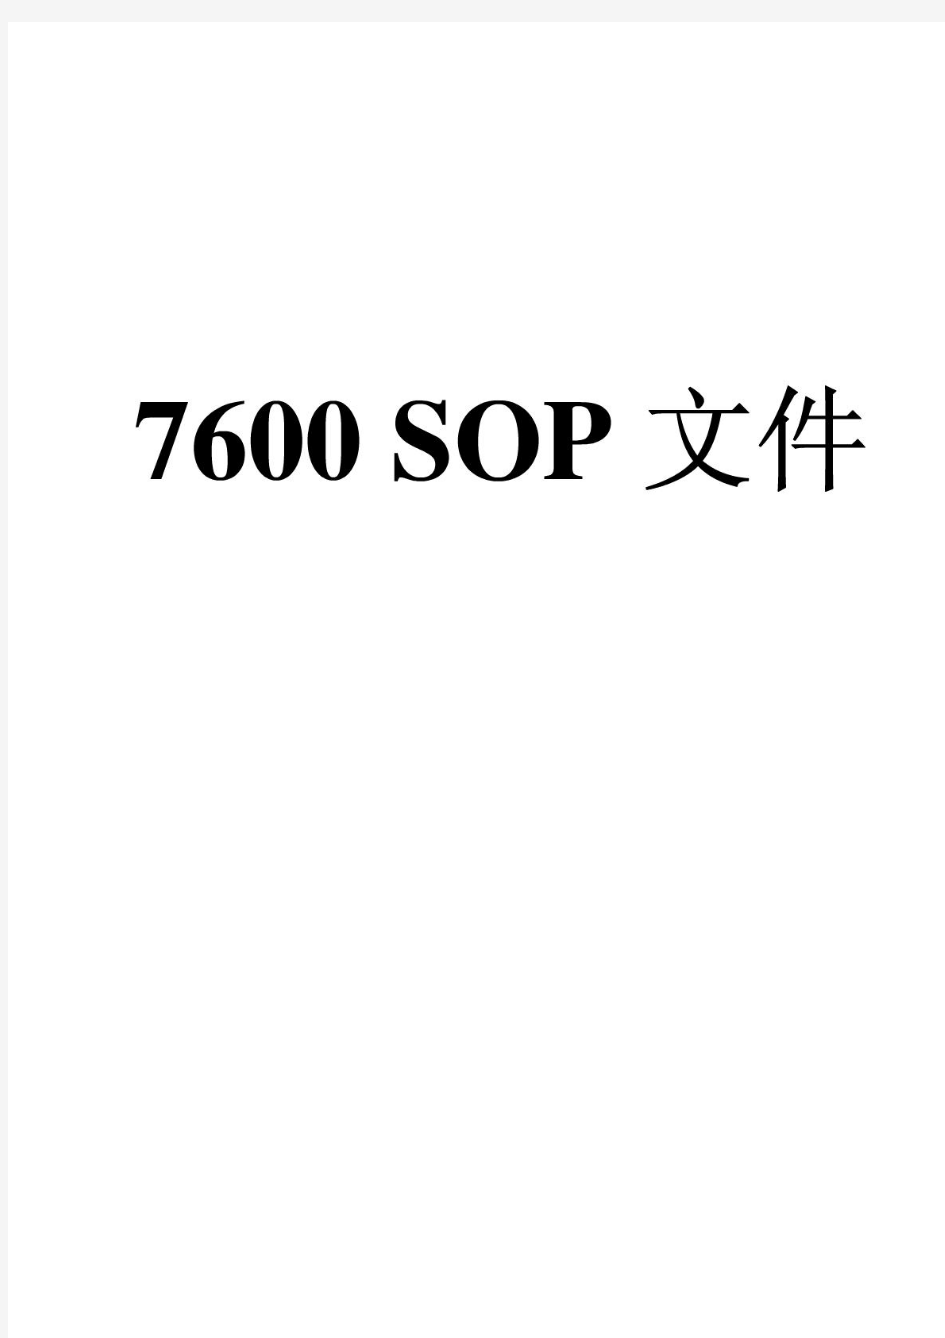 日立7600P全自动生化分析仪标准操作规程(SOP7600P)